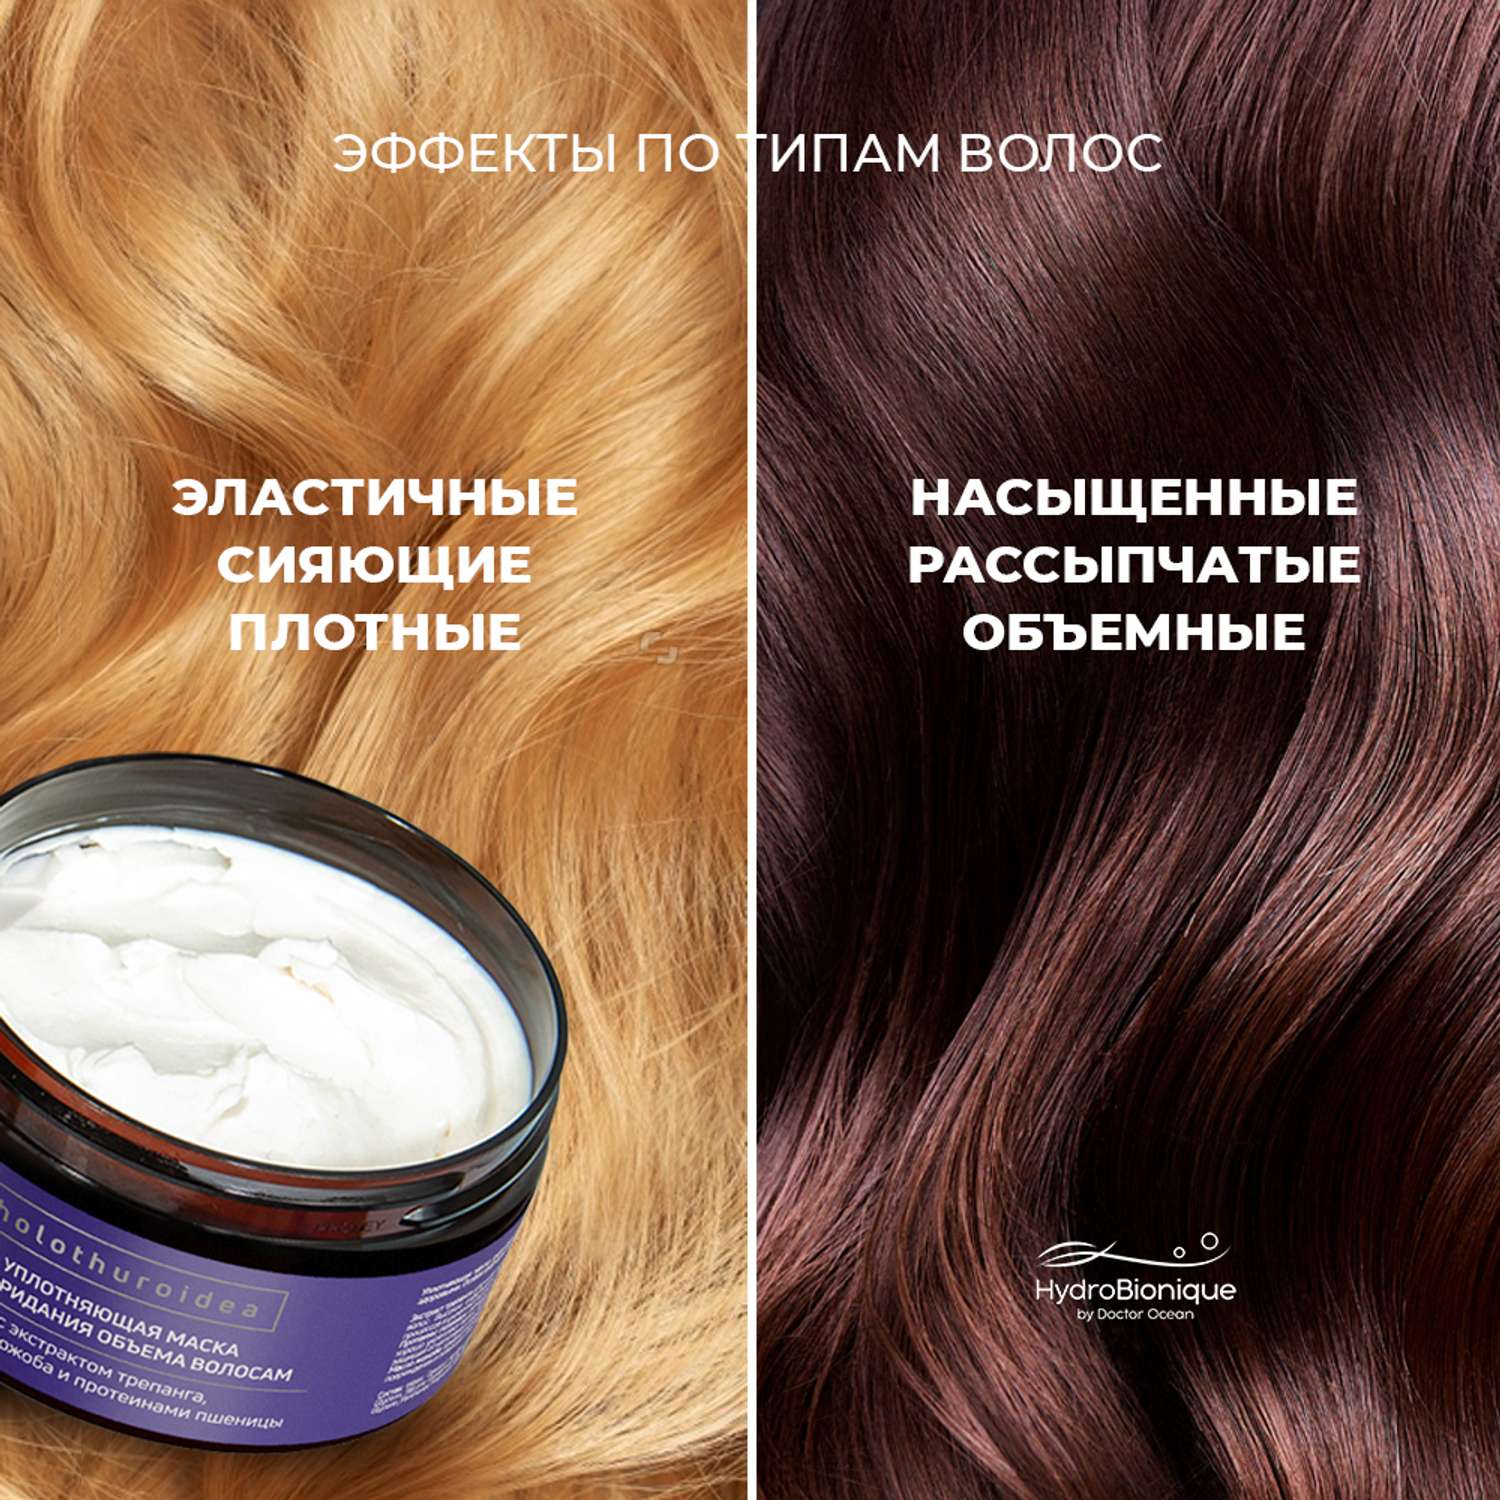 Маска для уплотнения и восстановления волос. Hydrobionique by Doctor Ocean шампунь волос фото.